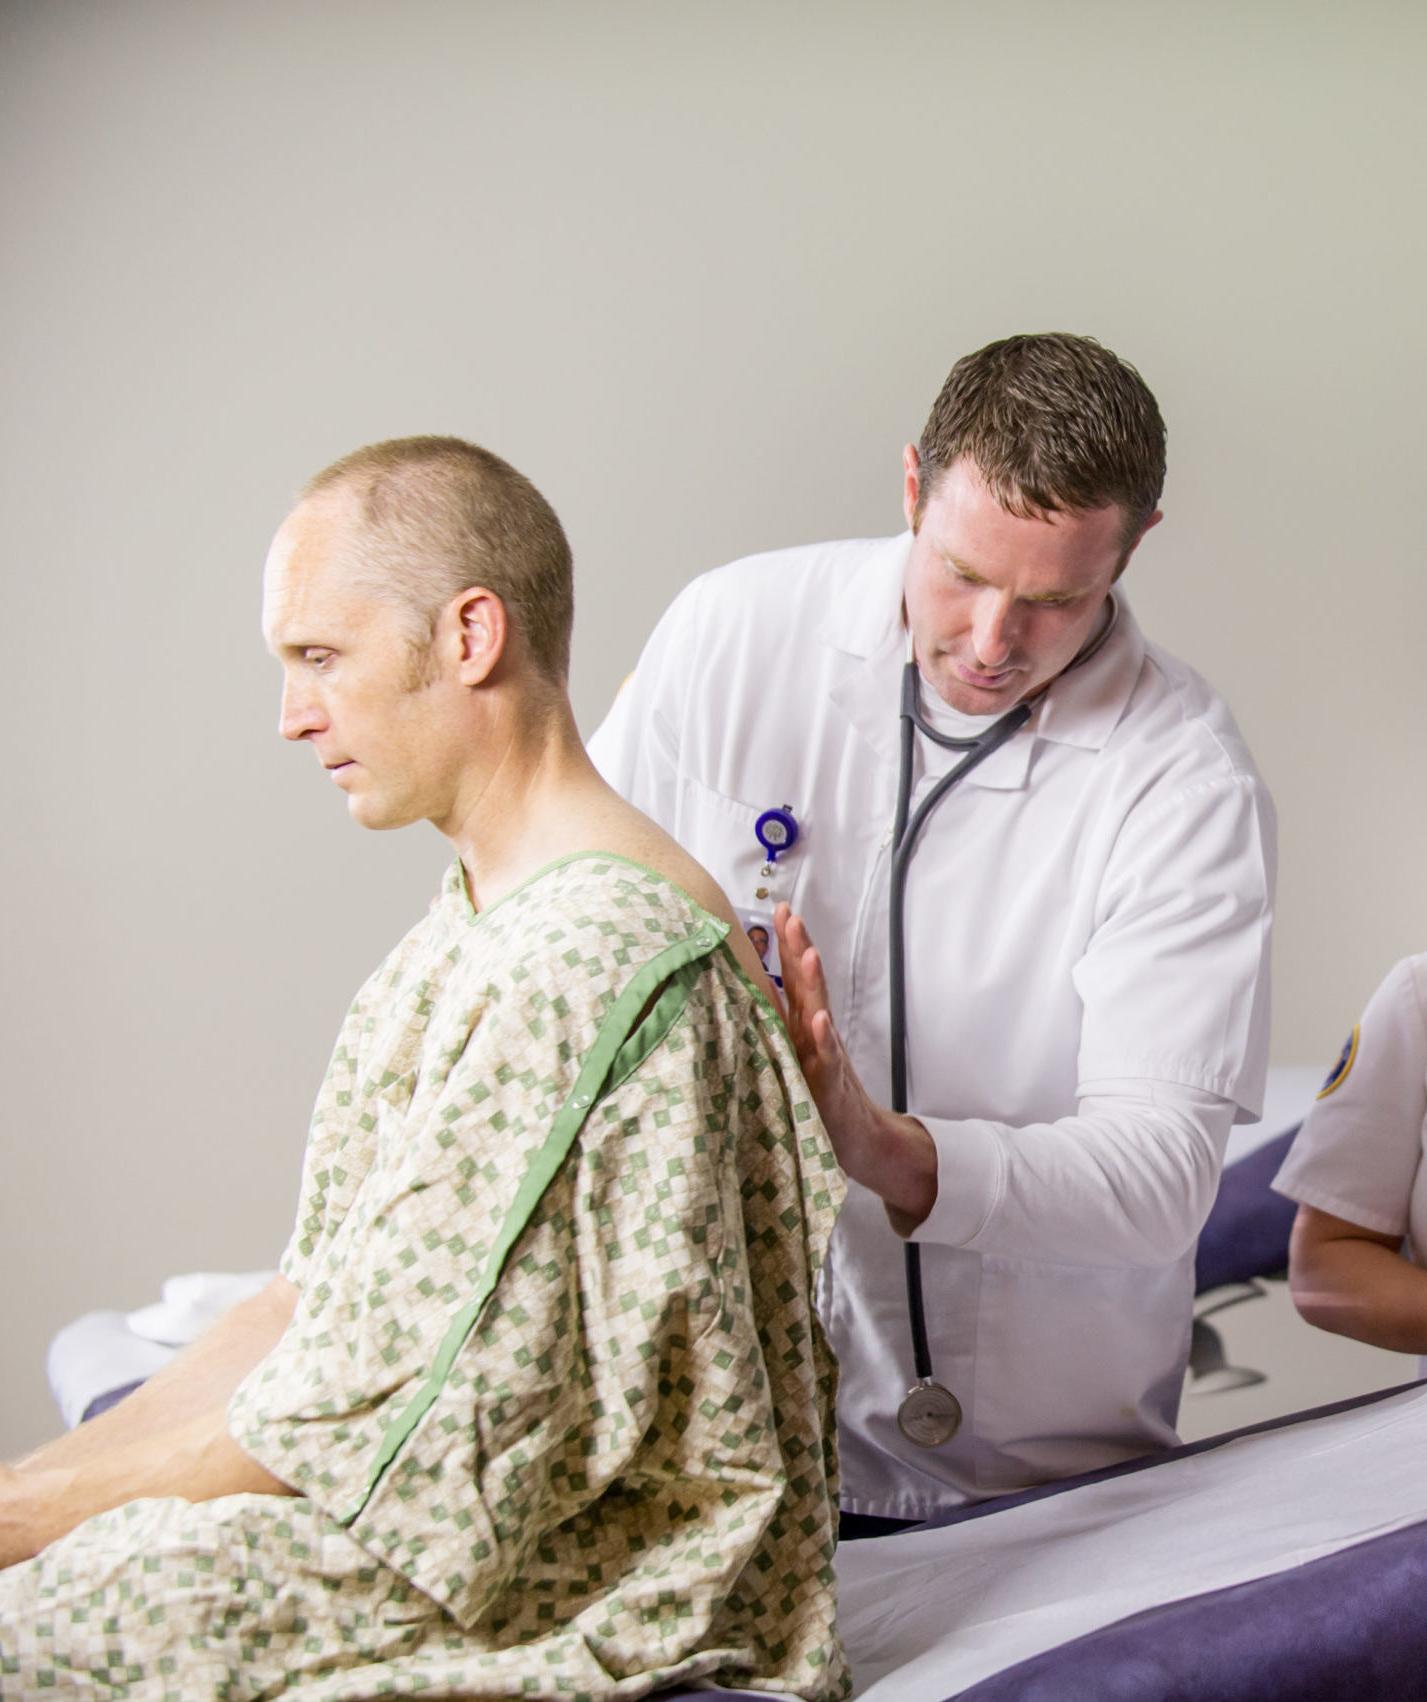 Male nurse examining patient.